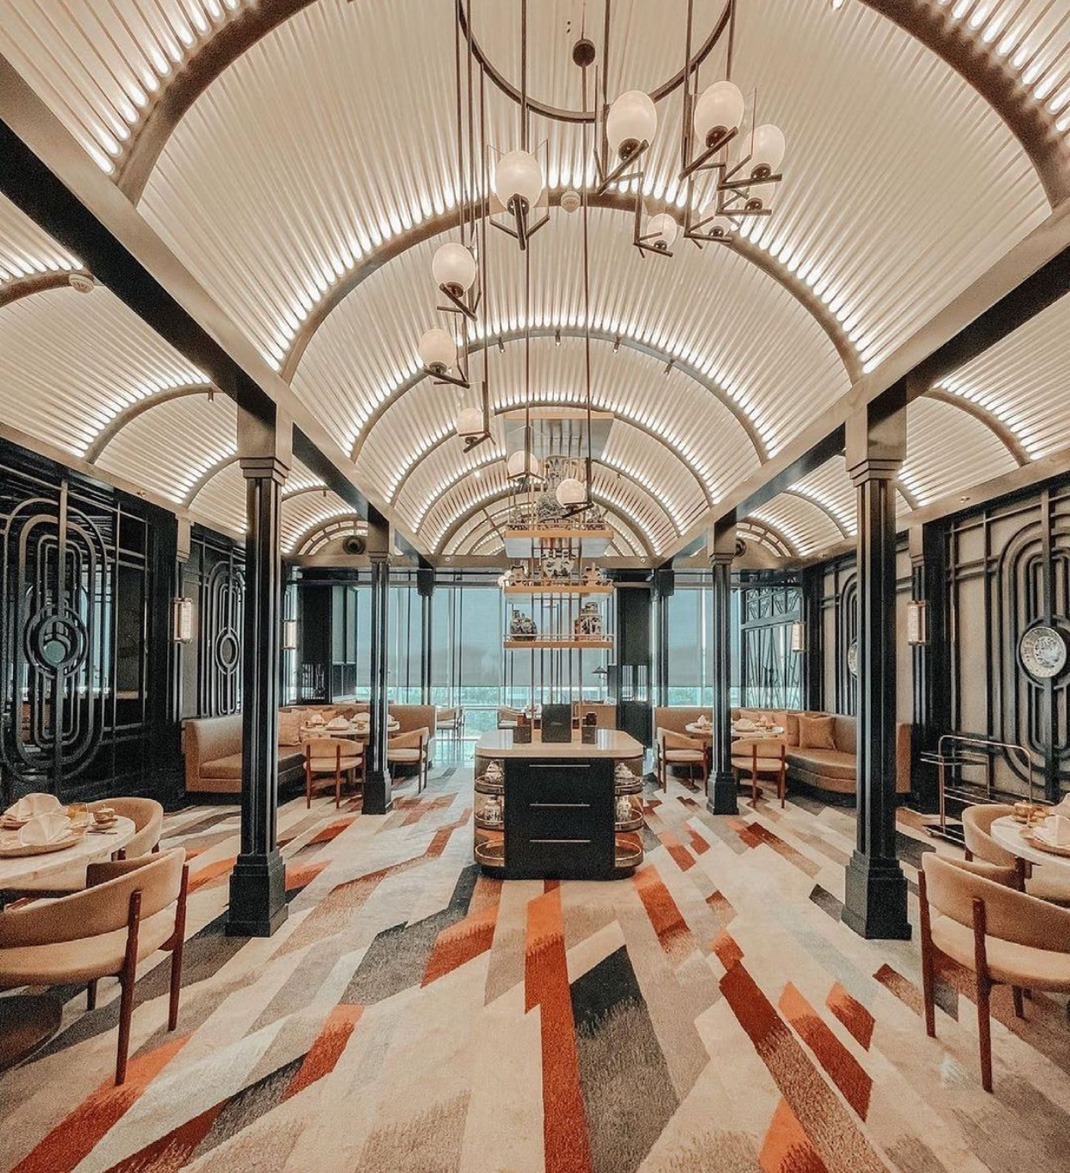 酒店餐厅Swissôtel Jakarta 印度尼西亚 雅加达 酒店餐厅 中国 金属 弧形 logo设计 vi设计 空间设计